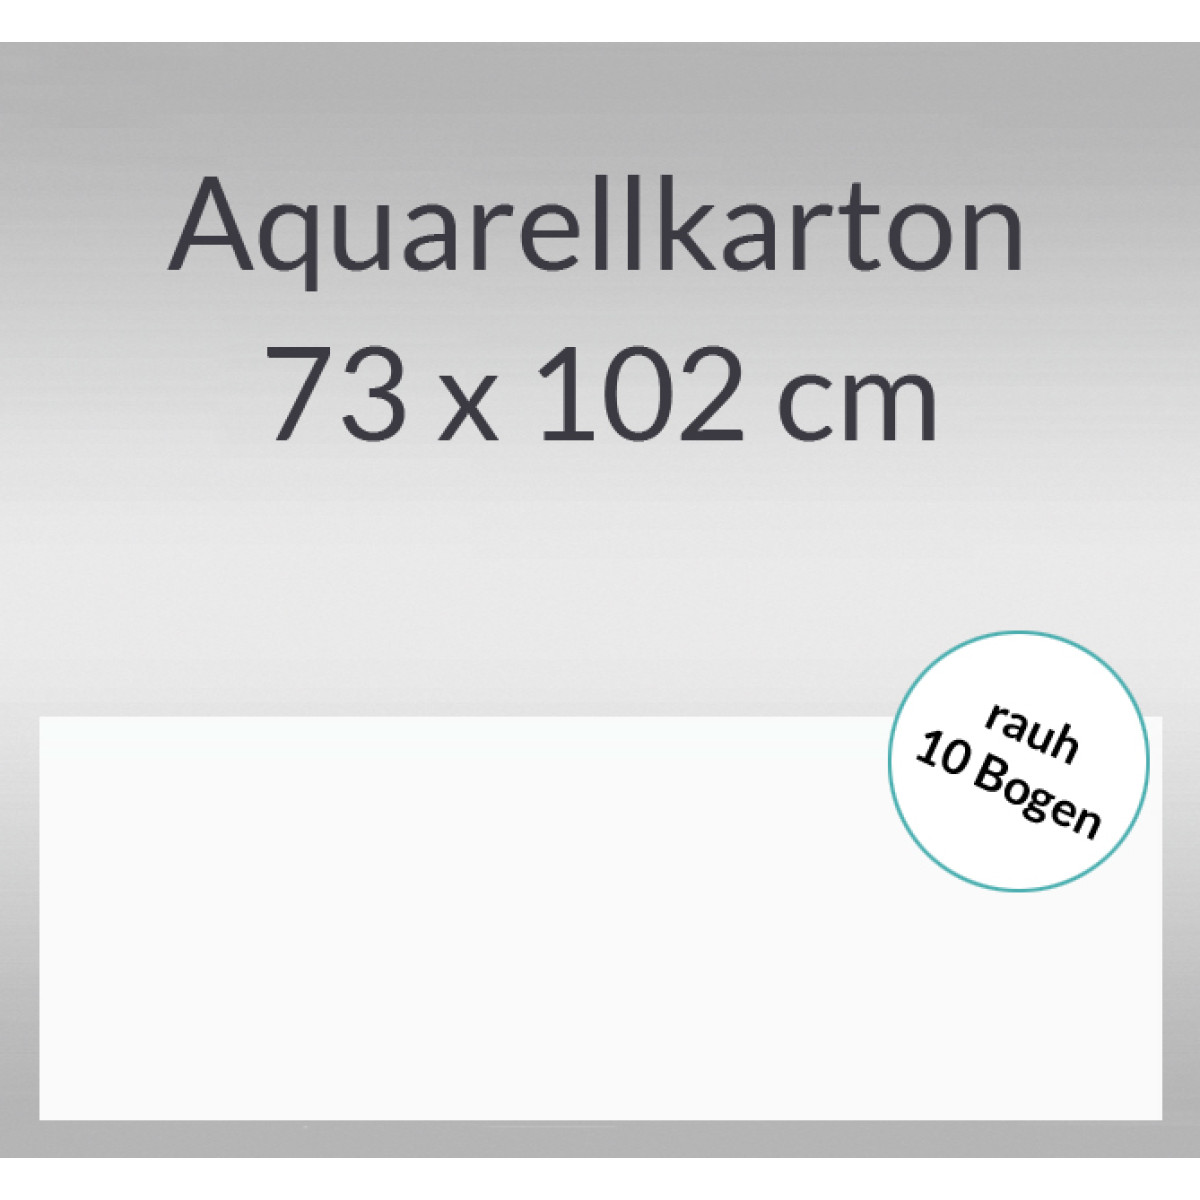 Aquarellkarton rauh 200 g/qm 73 x 102 cm